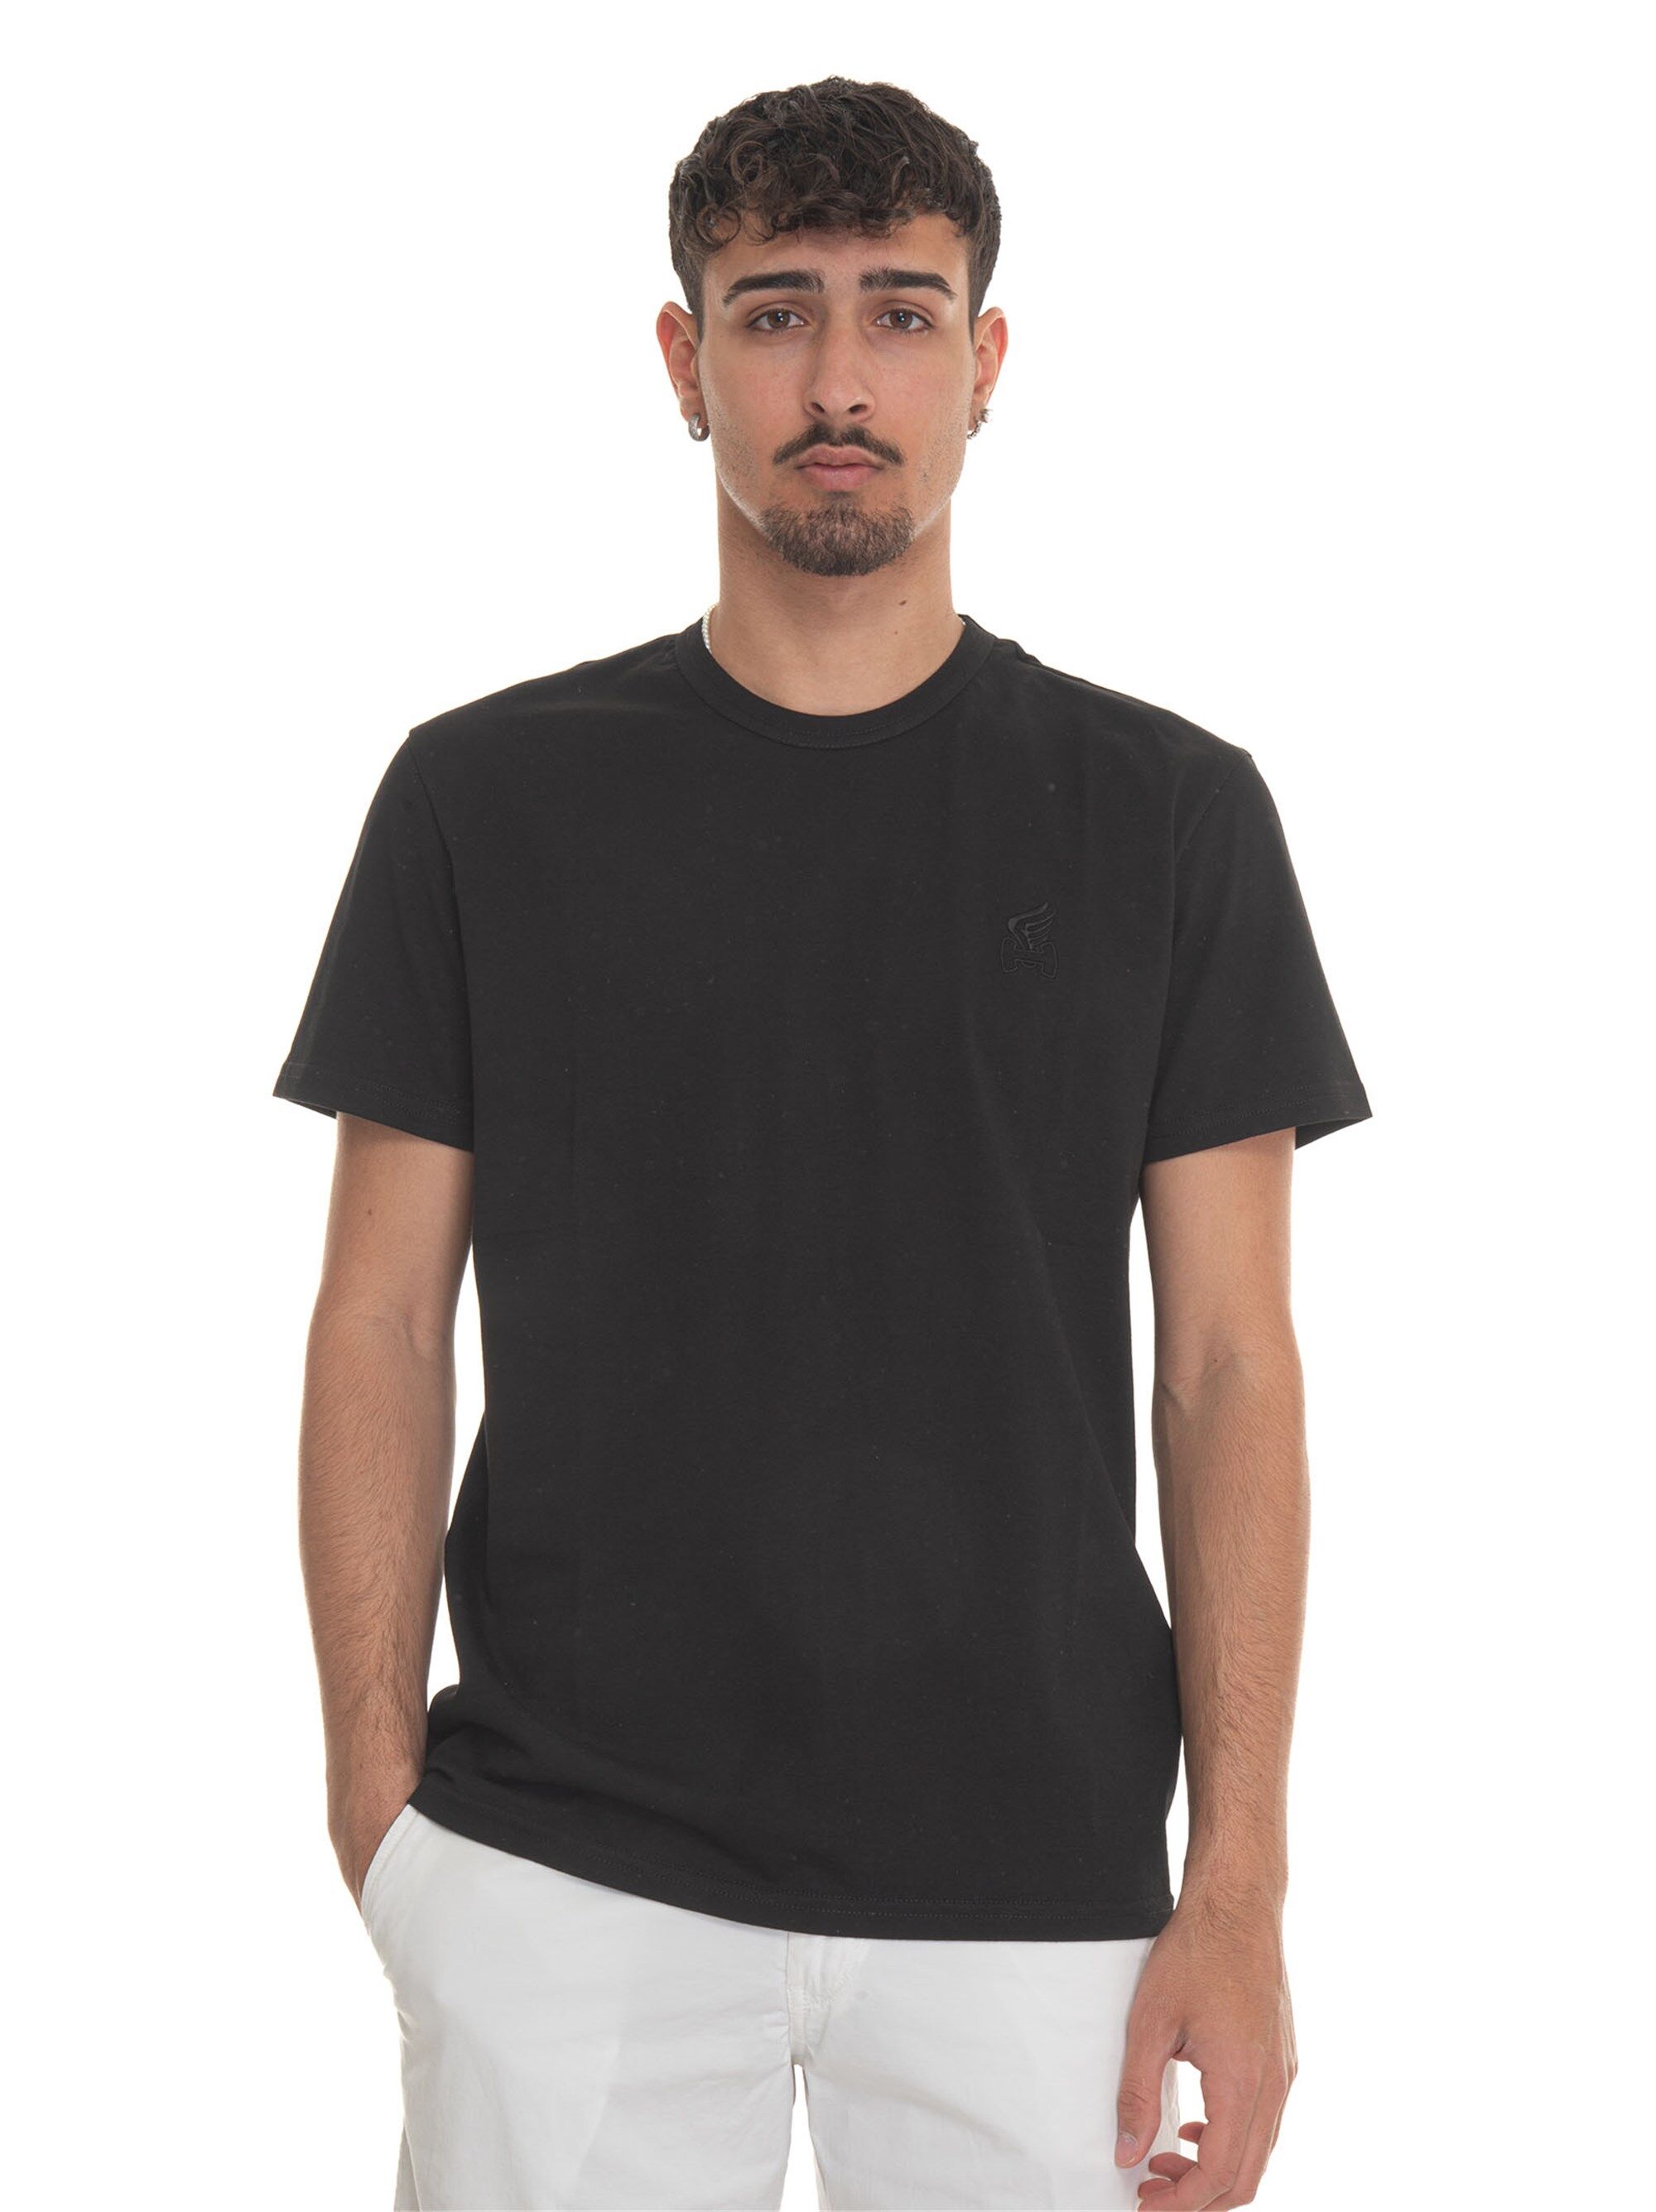 Hogan T-shirt girocollo mezza manica Nero Uomo XL